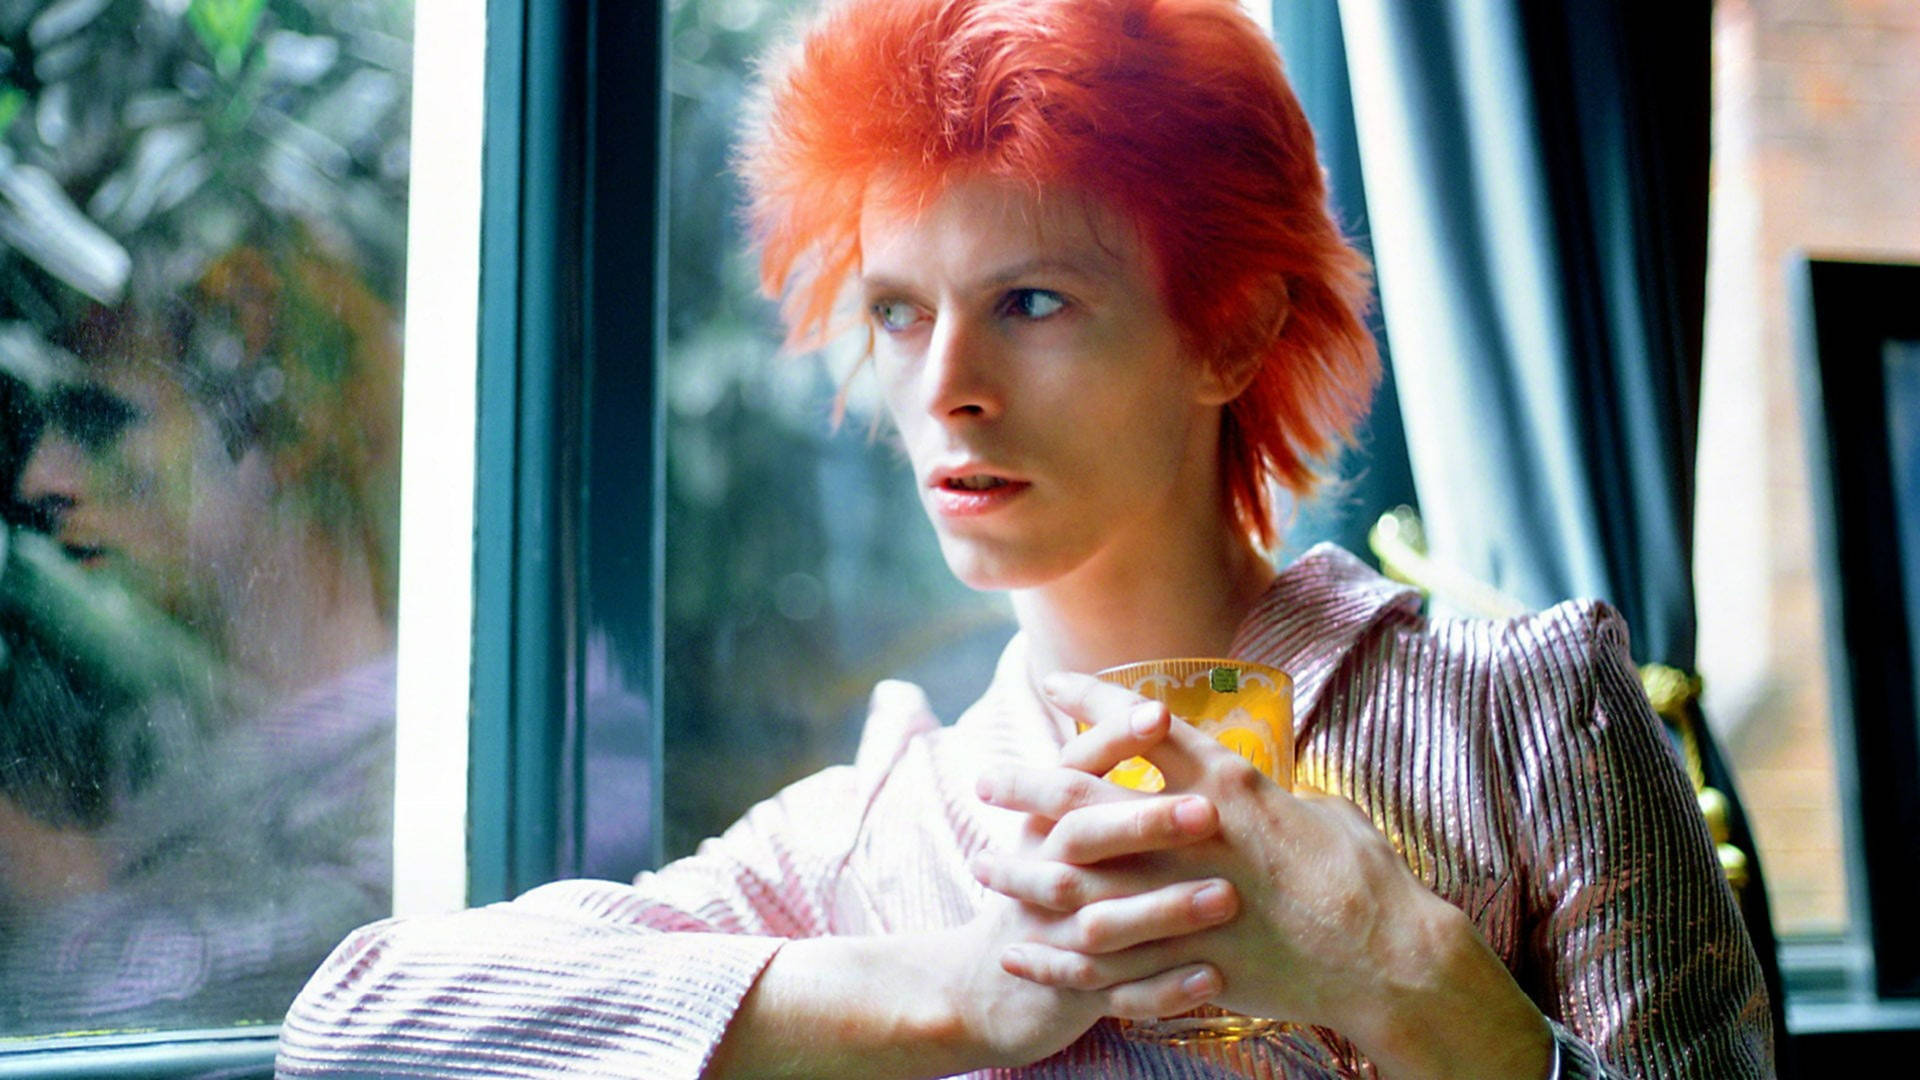 David Bowie With Orange Hair Background